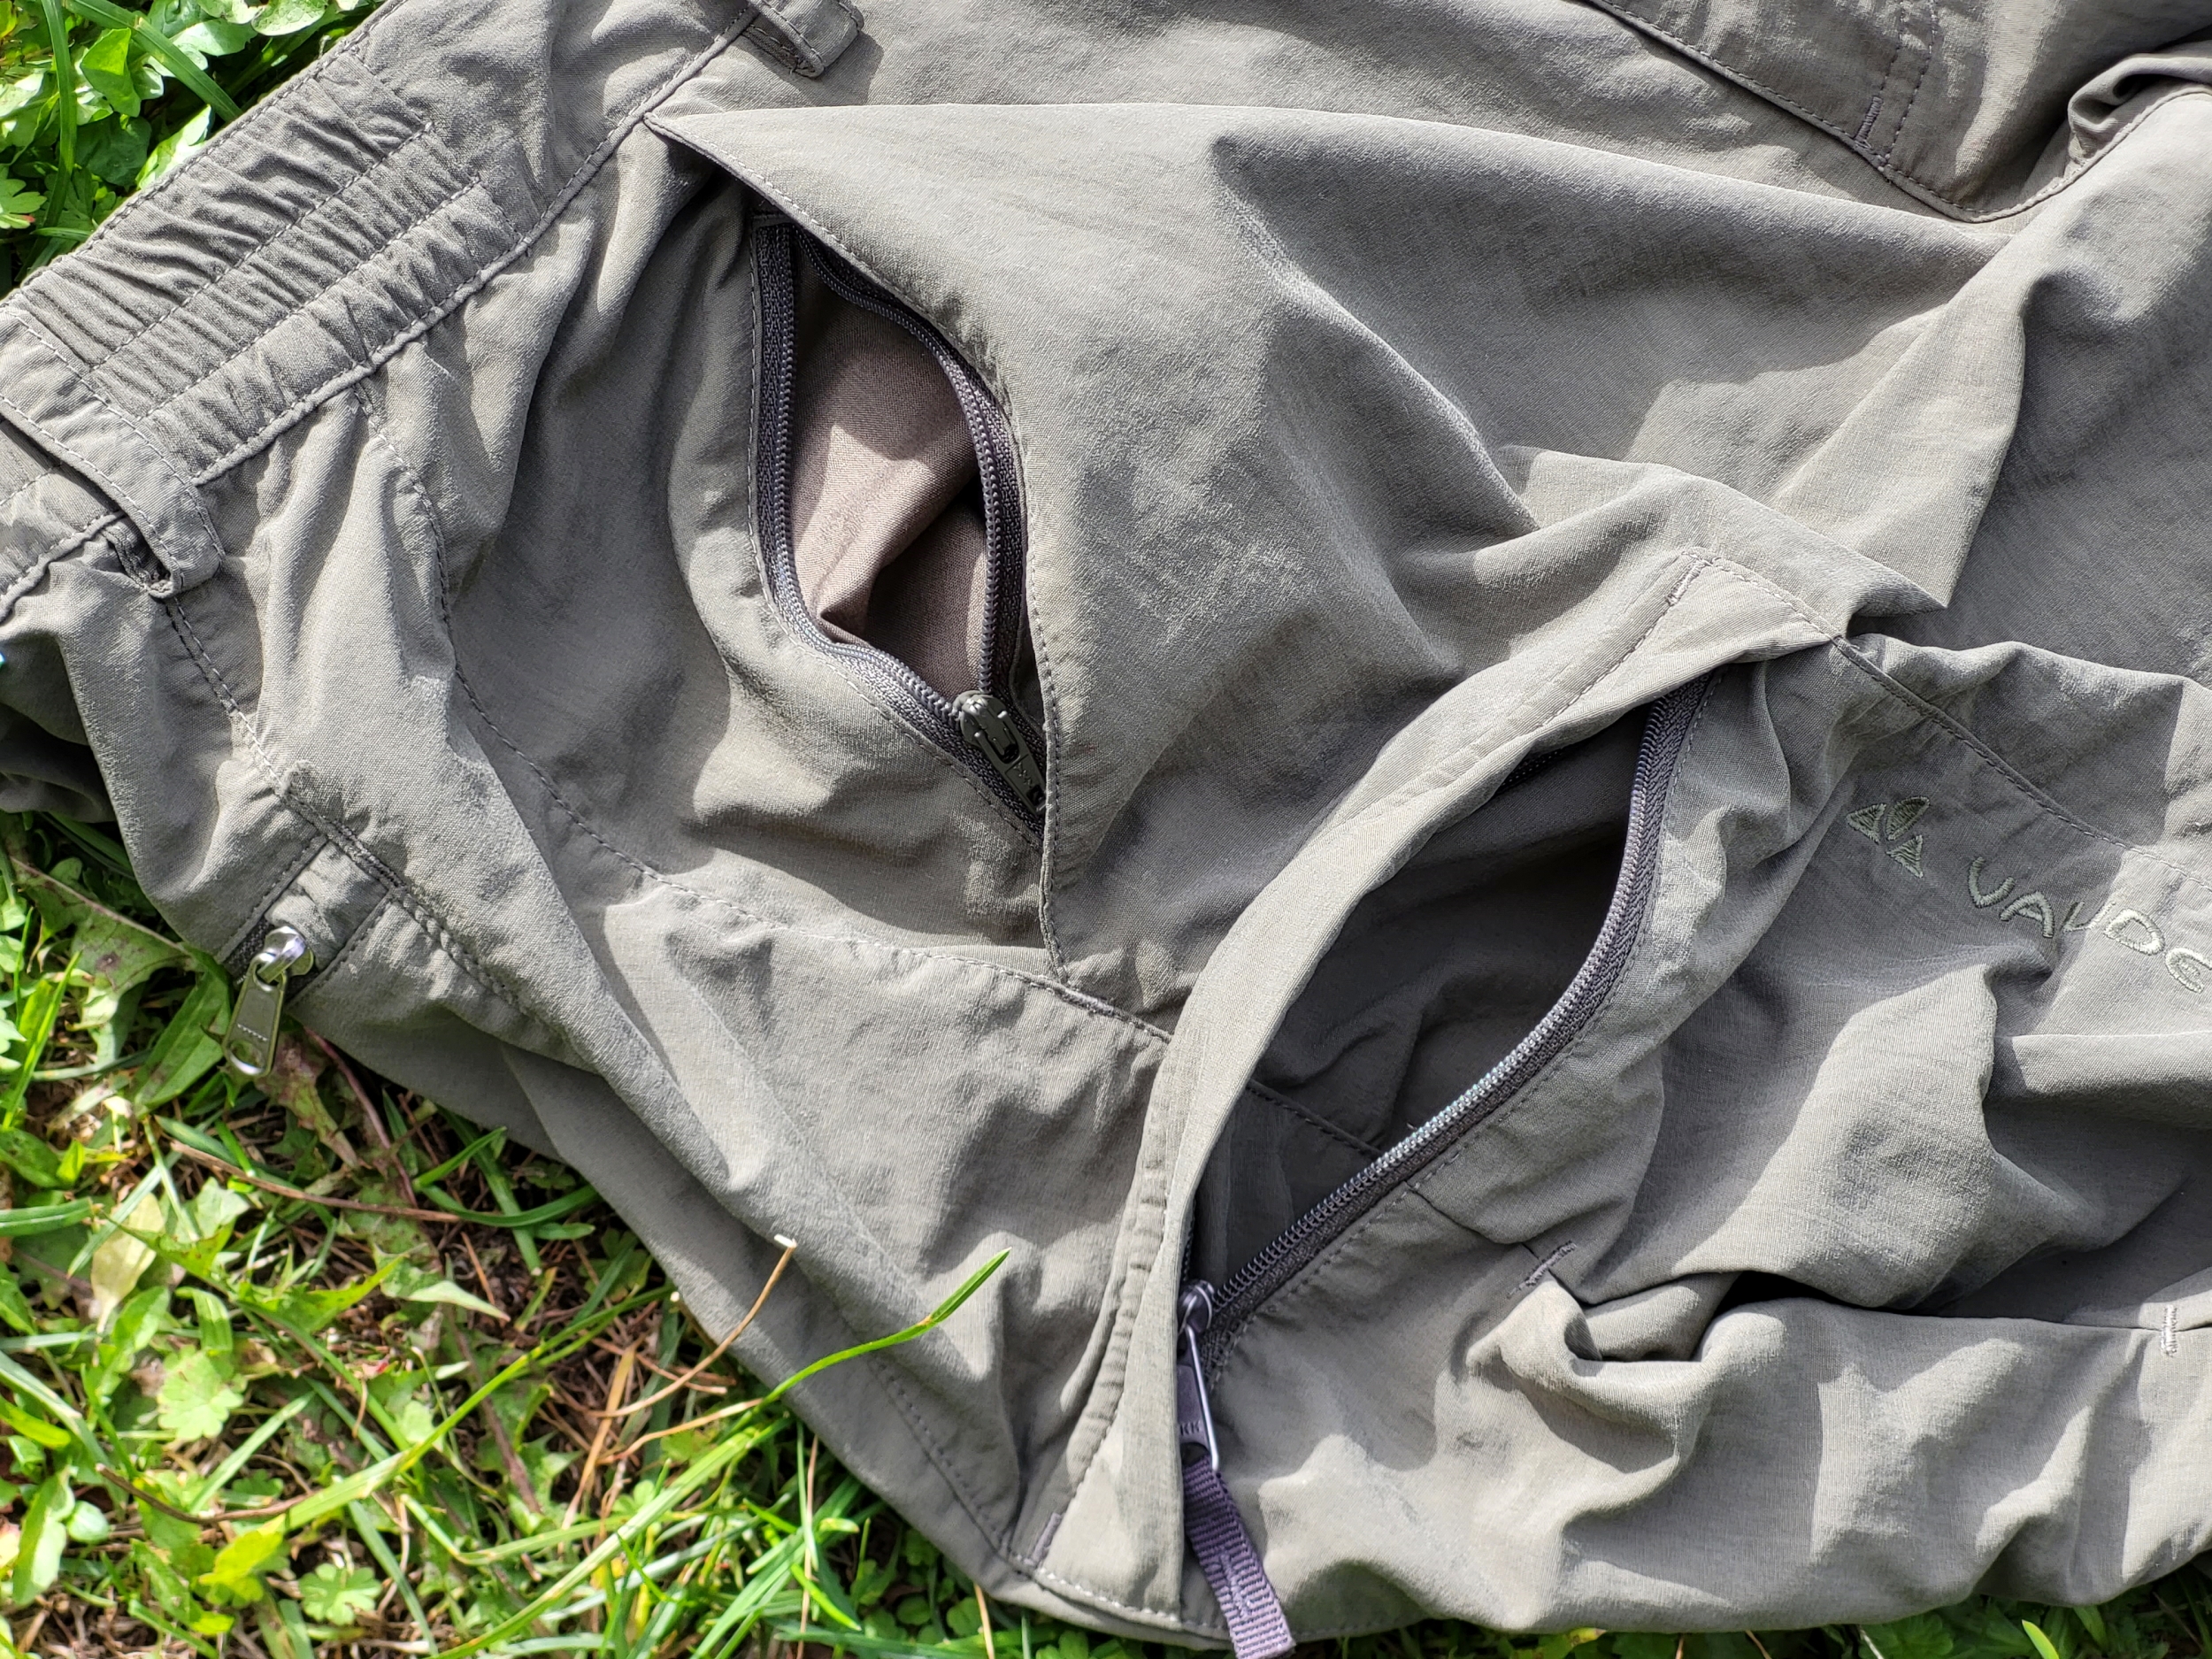 Seitentasche der Vaude Farley V Hose mit Geheimfach und Oberschenkeltasche mit Reißverschluss